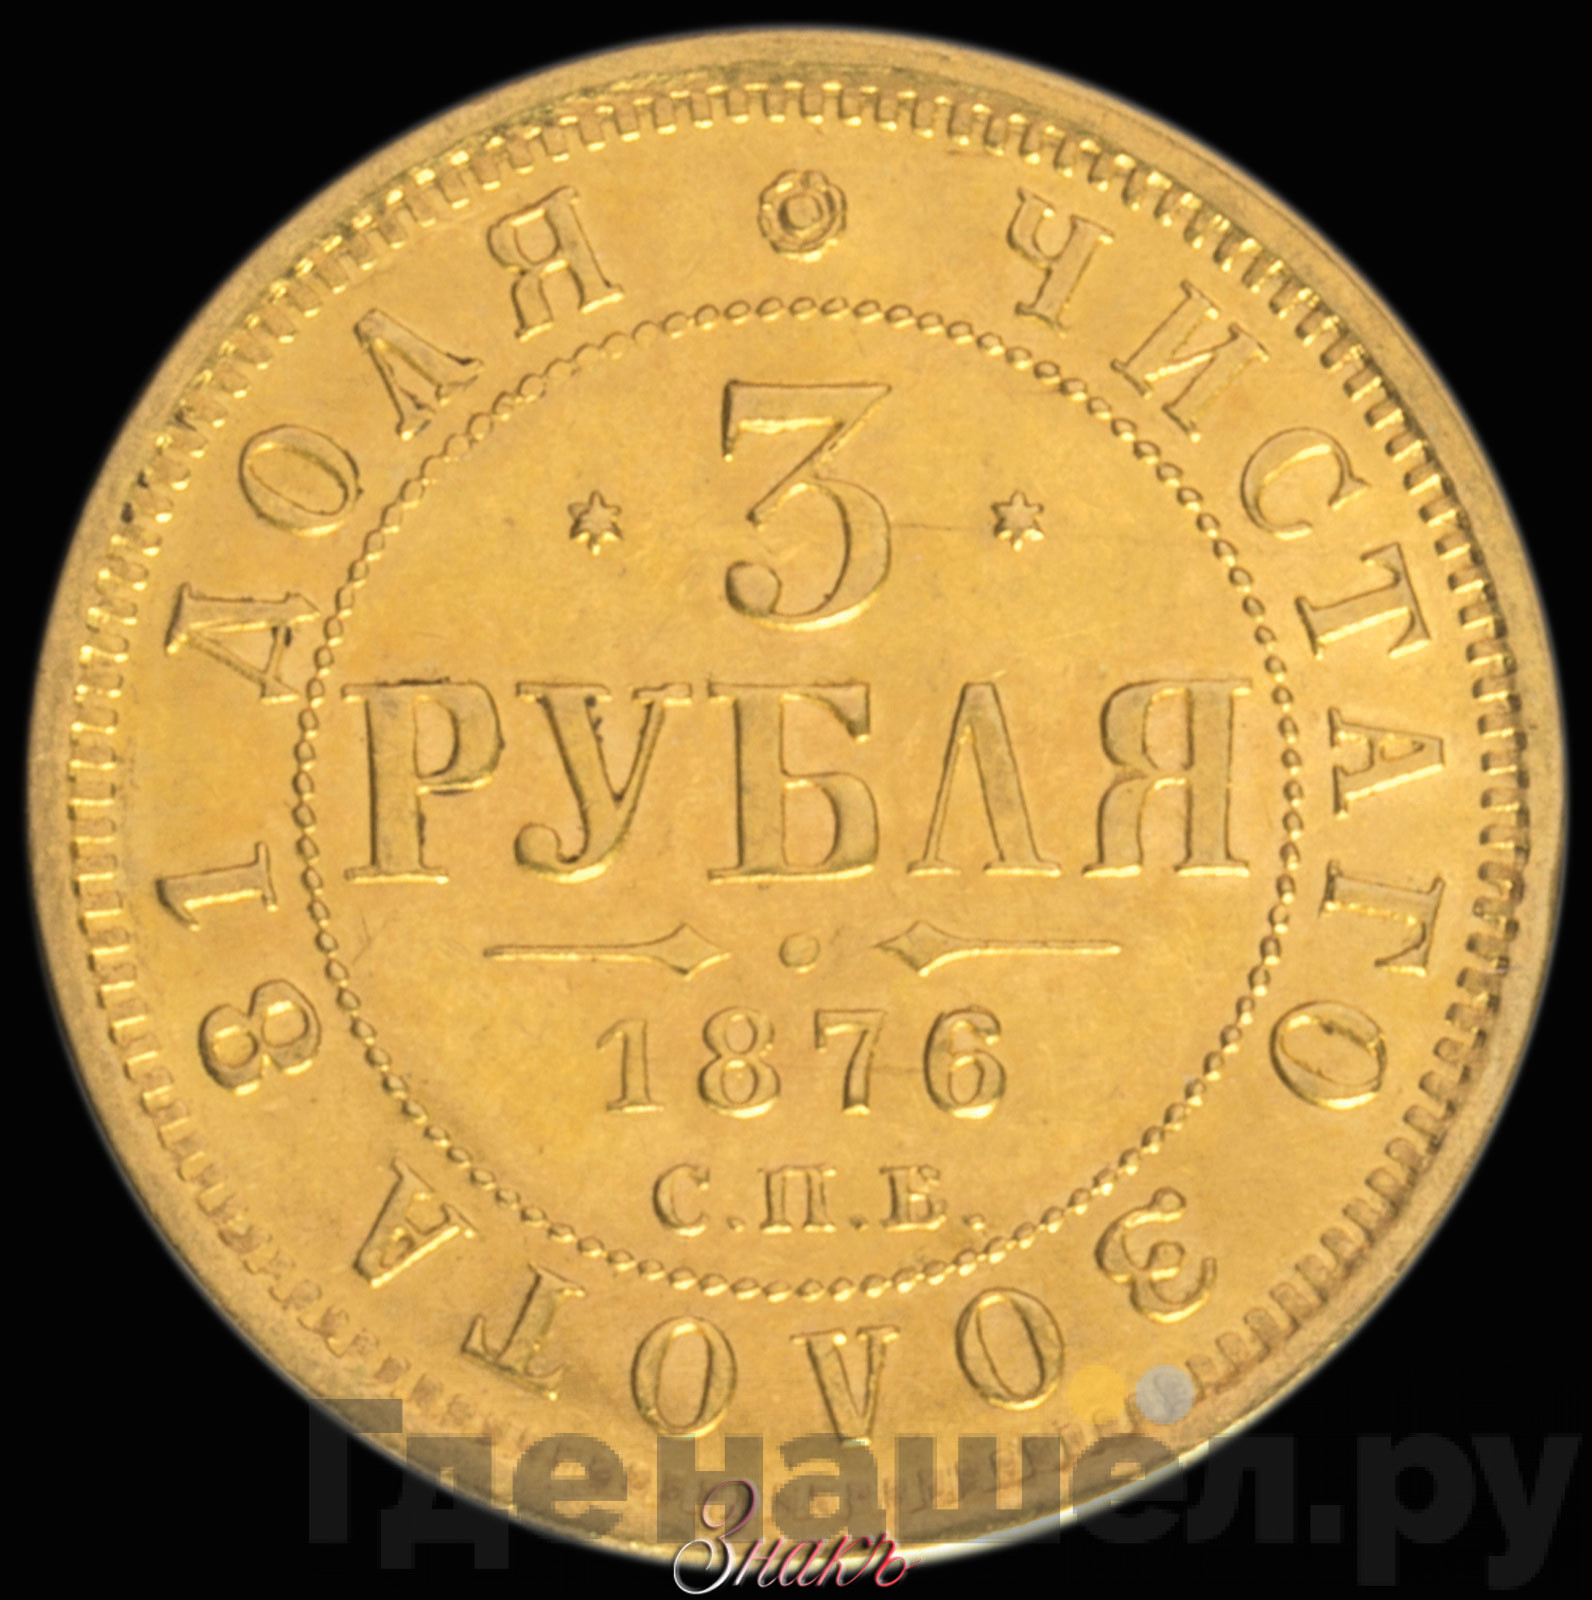 3 рубля 1876 года СПБ НI